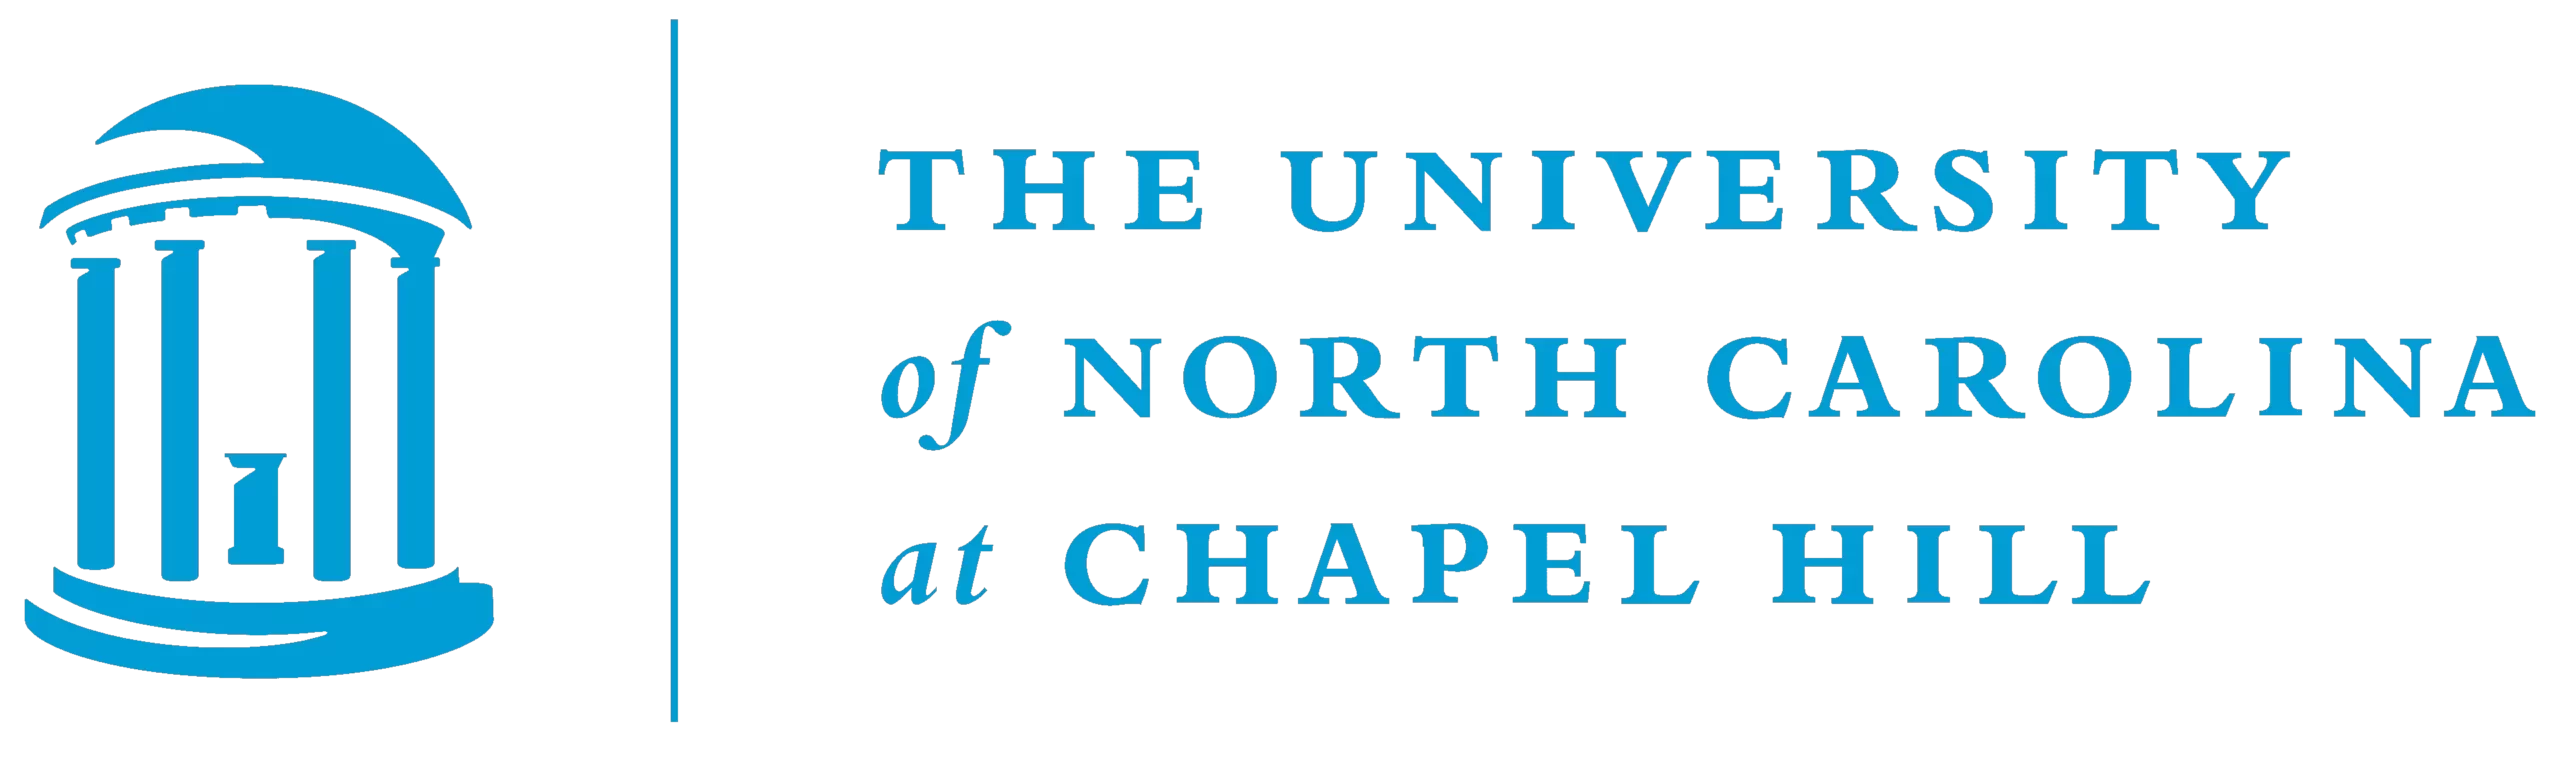 Университет Северной Каролины в Чапел-Хилле лого